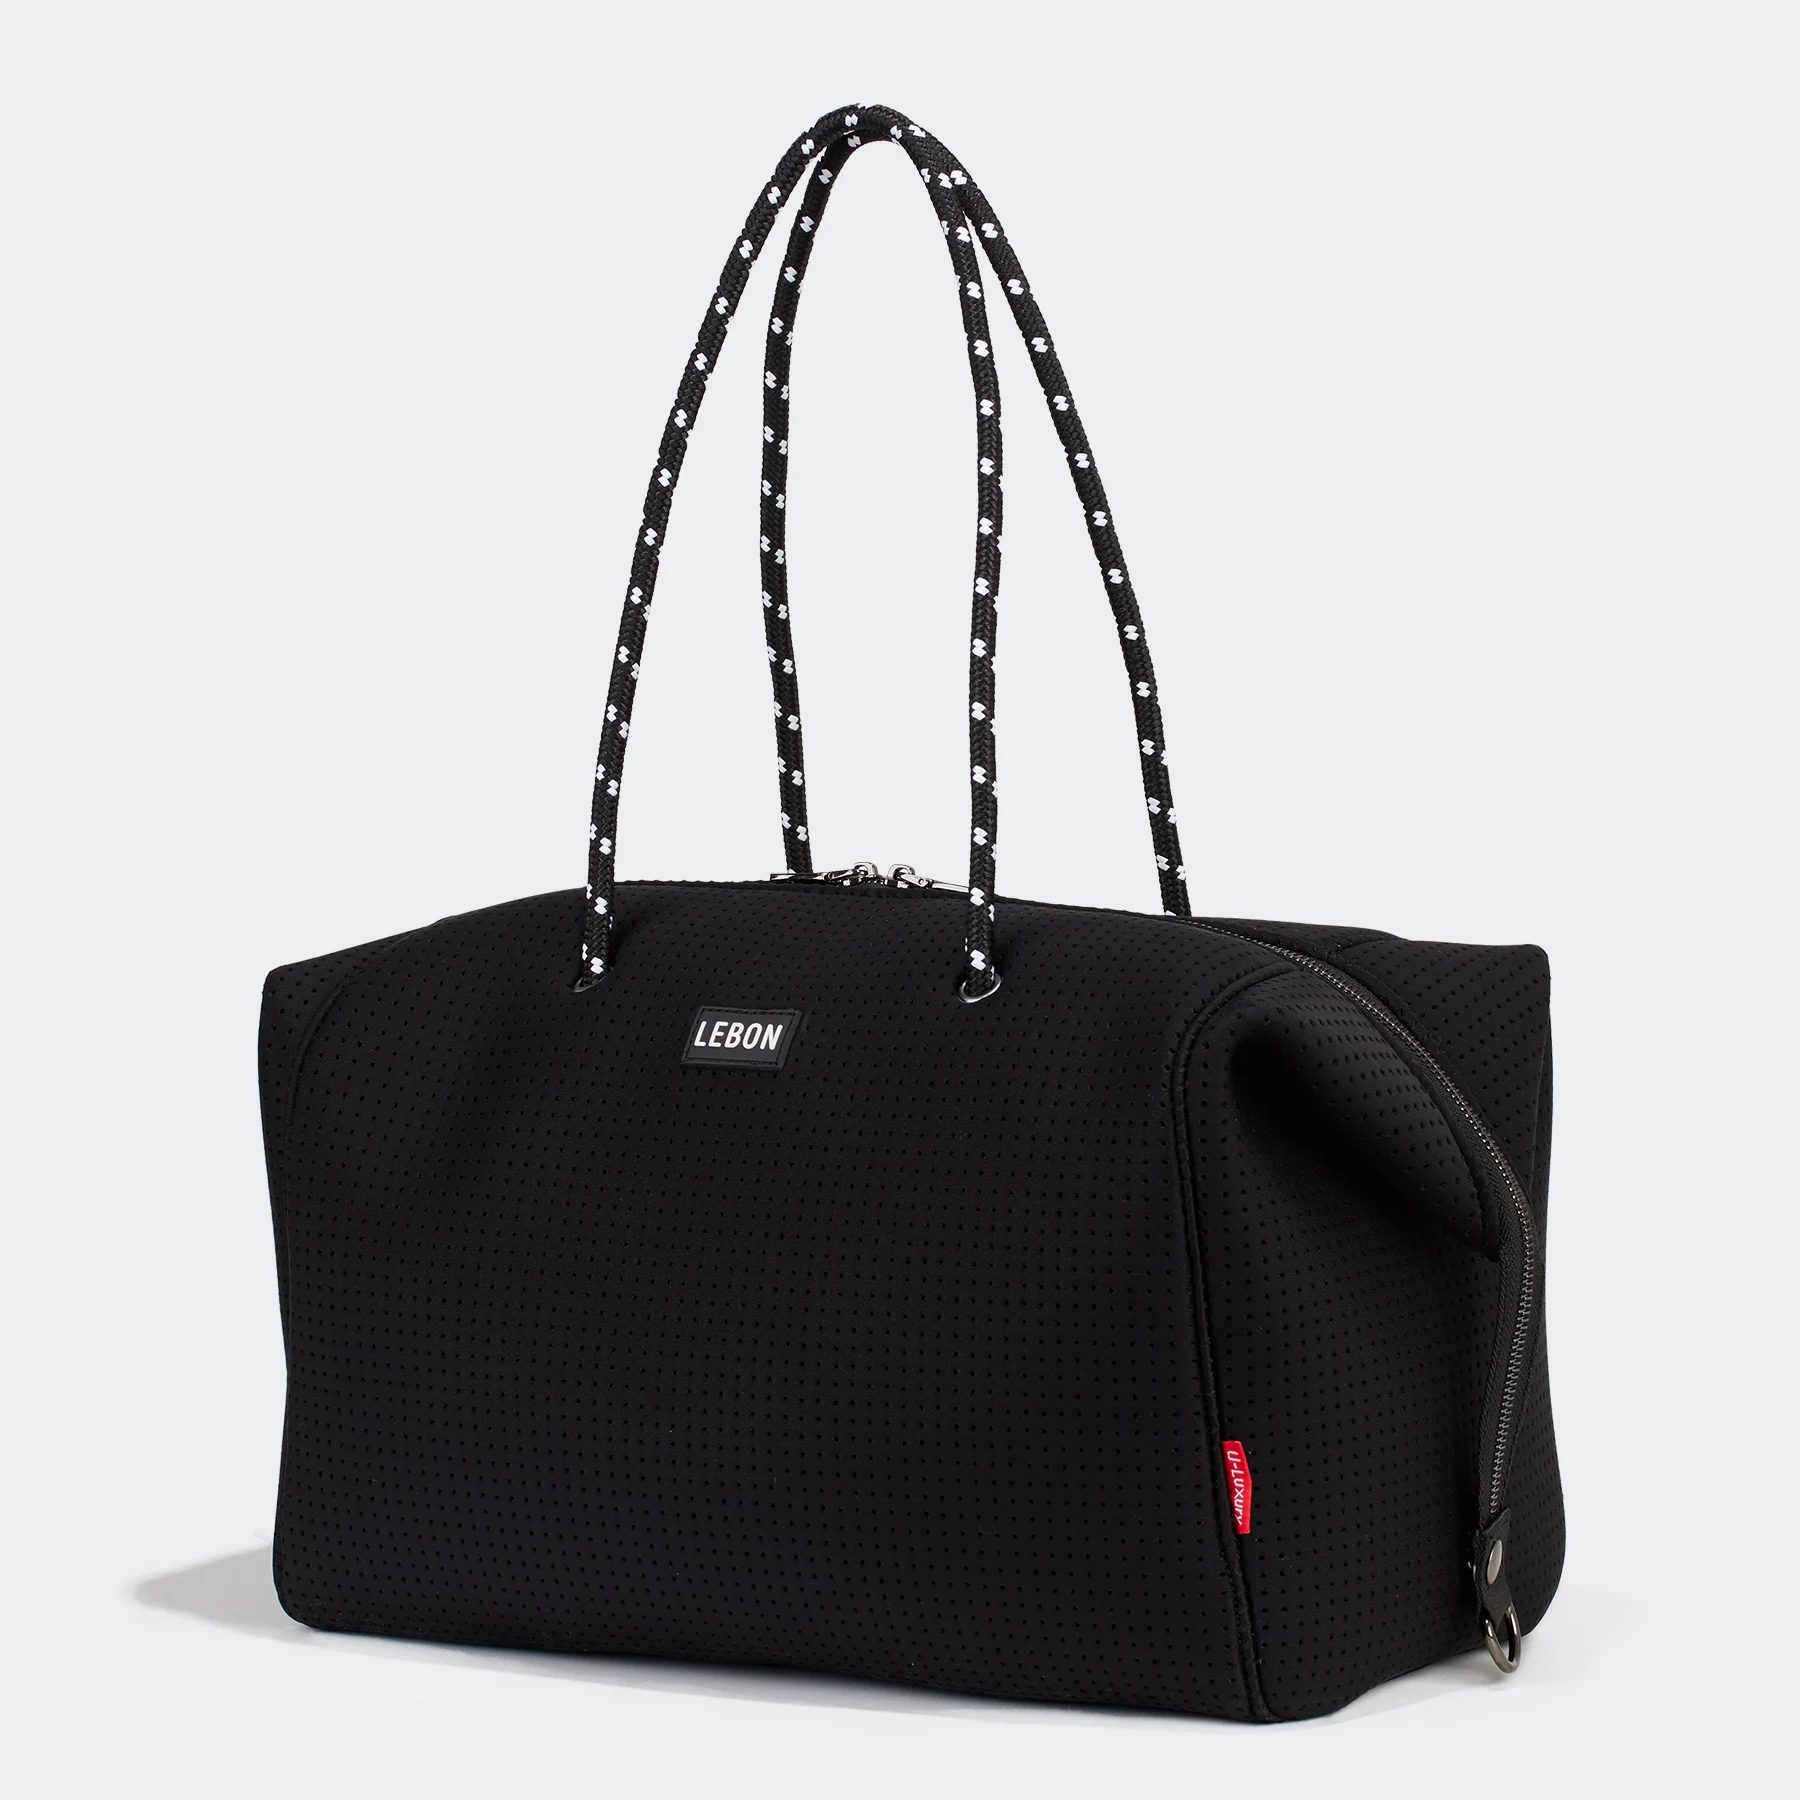 Travel Bag Premium Neoprene Weekender Bag Unisex Duffel Luggage Bags ...